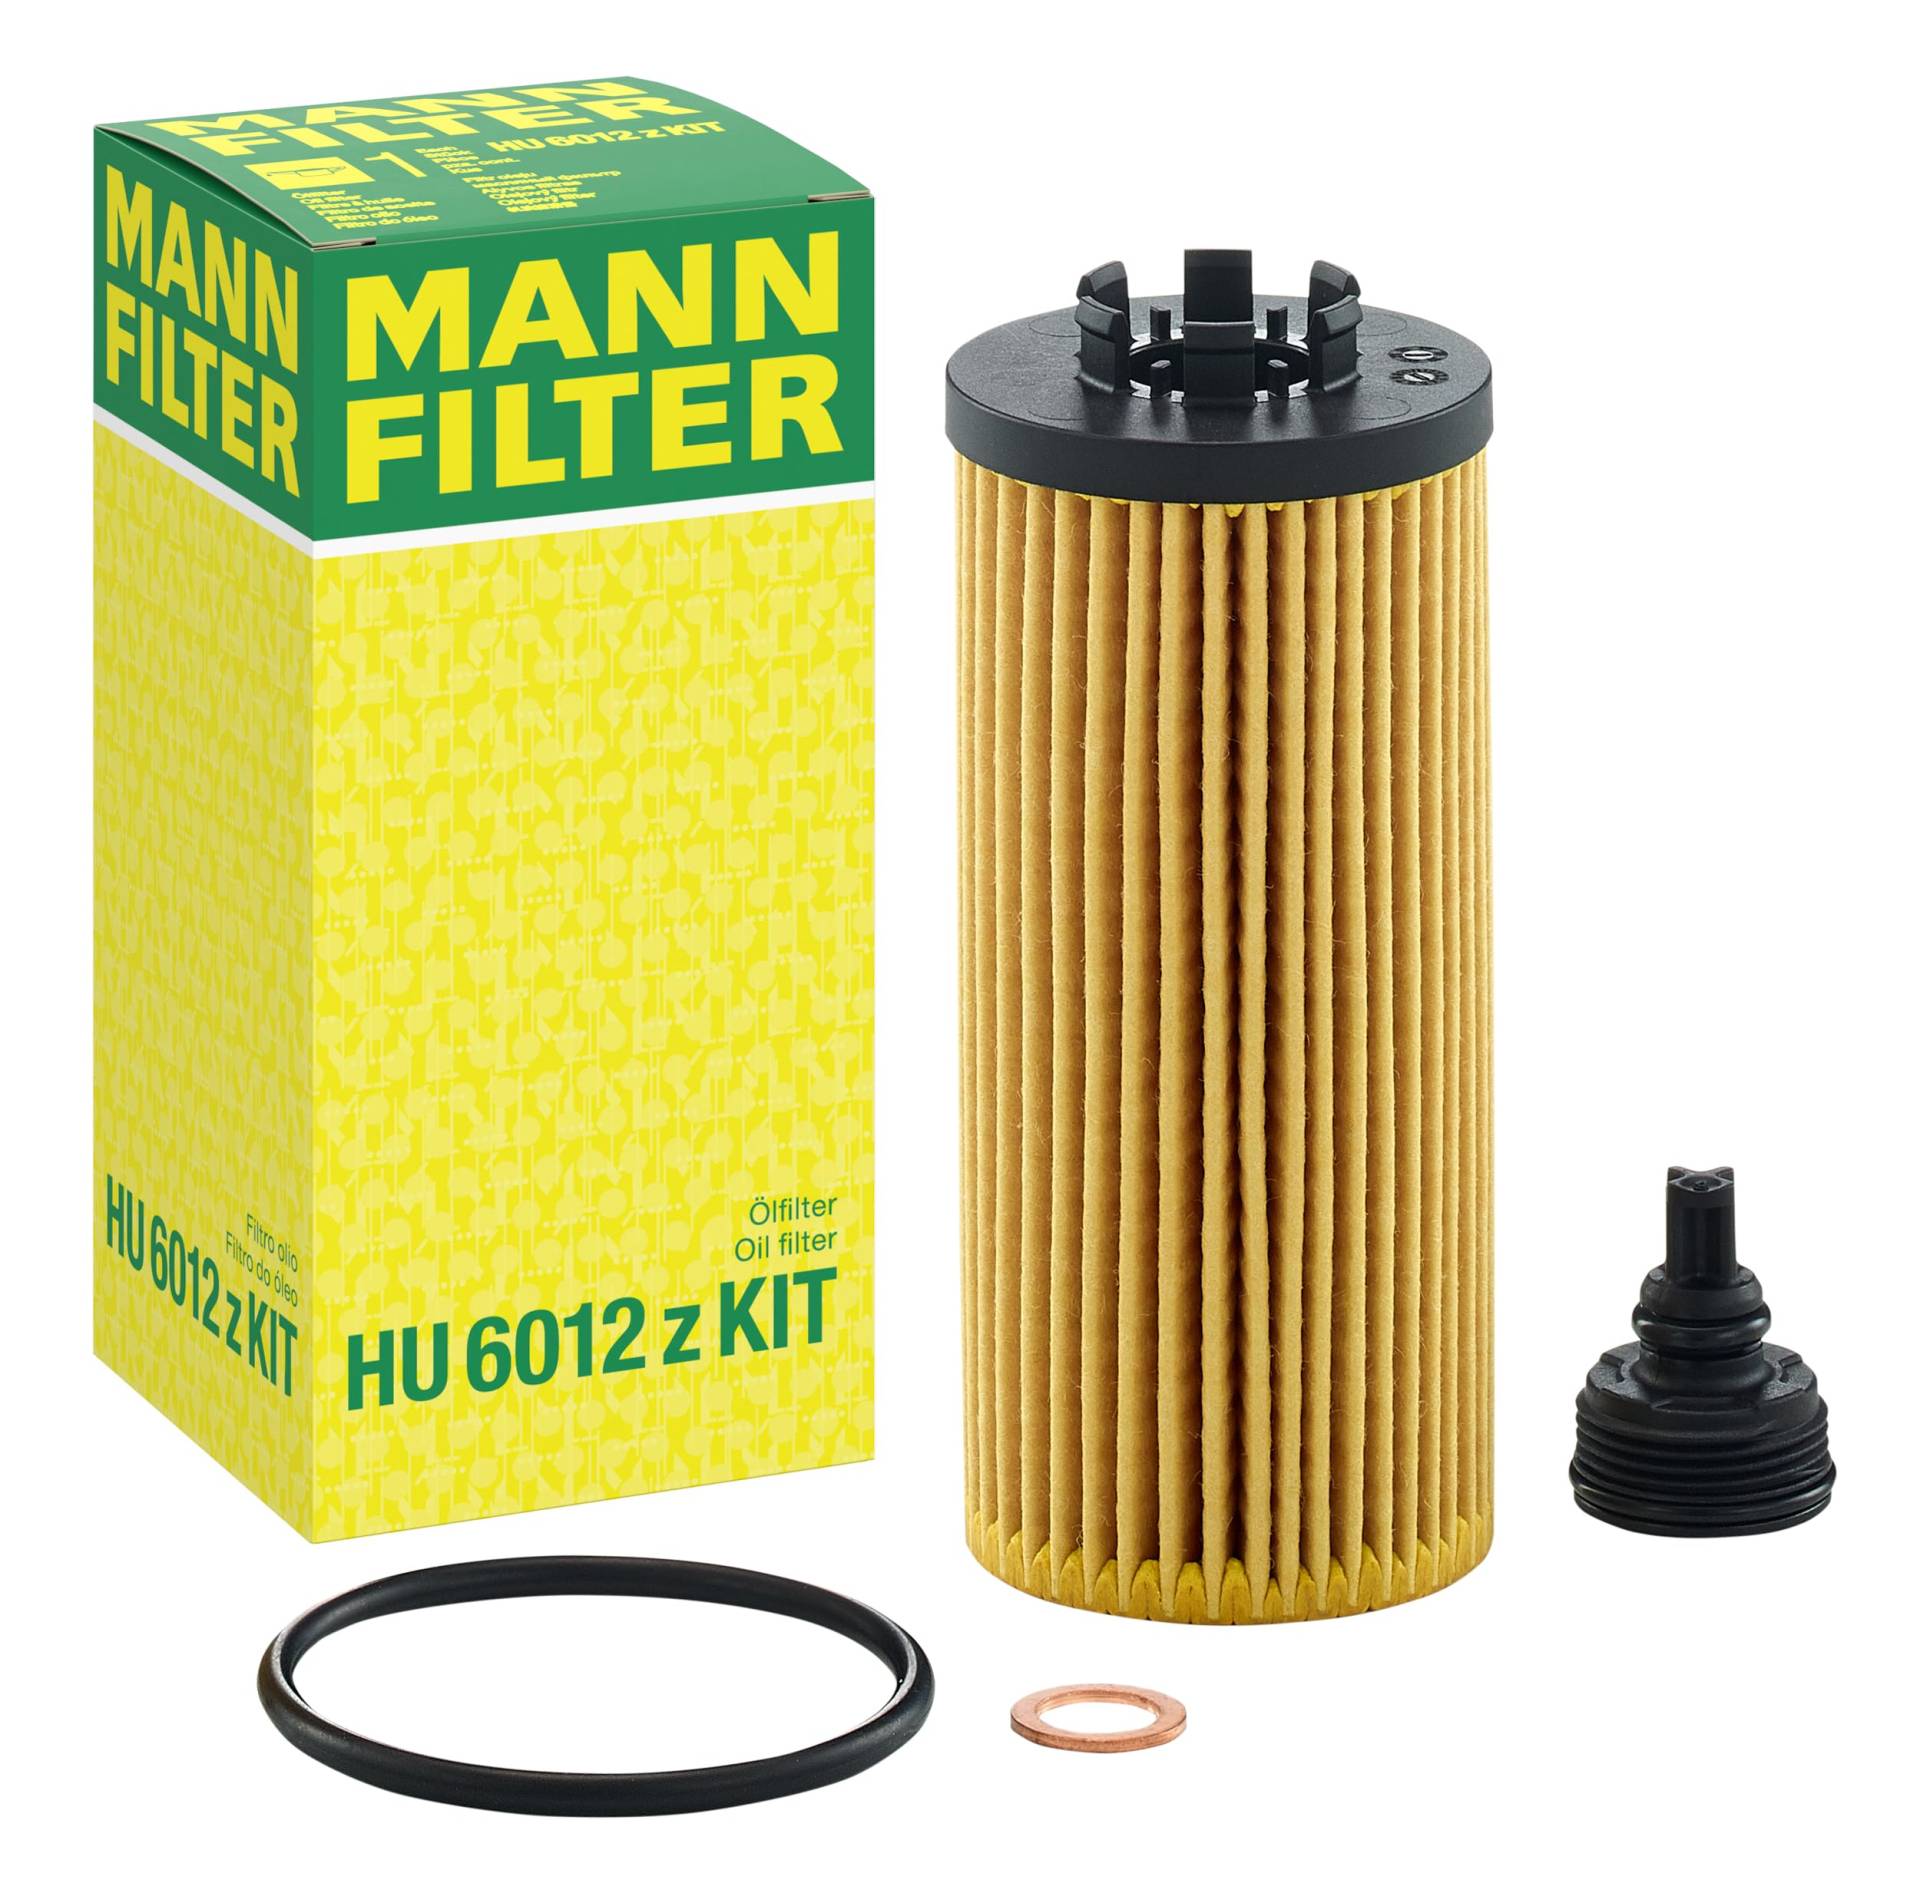 MANN-FILTER HU 6012 z KIT Ölfilter – Ölfilter Satz mit Dichtung / Dichtungssatz – Für PKW von MANN-FILTER